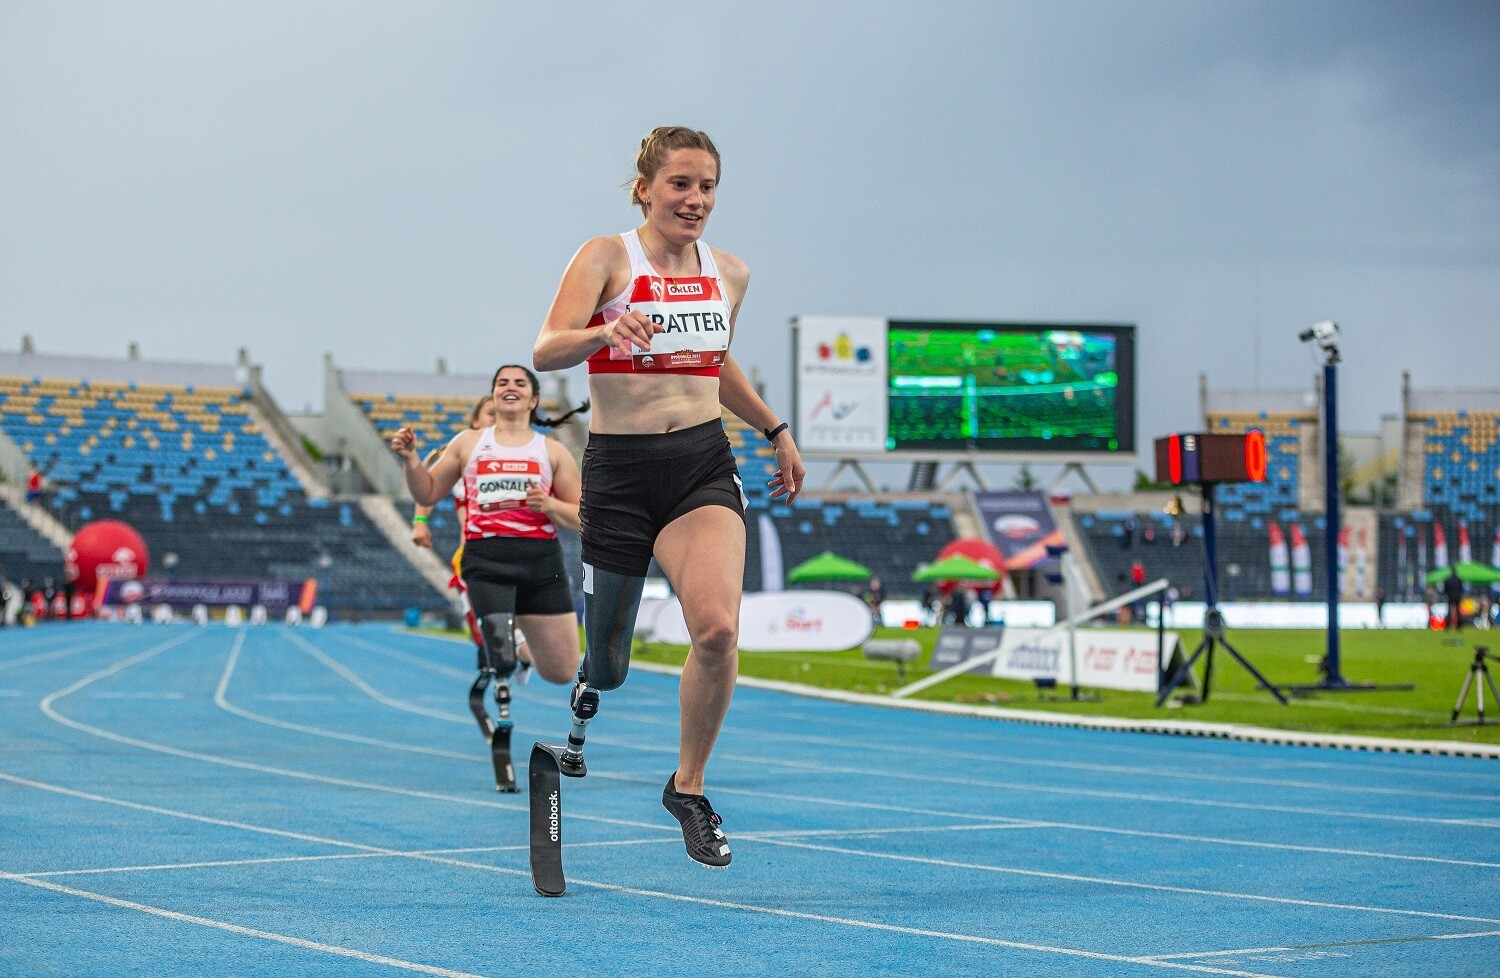 Die junge Leichtathletin Elena Kratter rennt mit Beinprothese über eine Laufbahn.